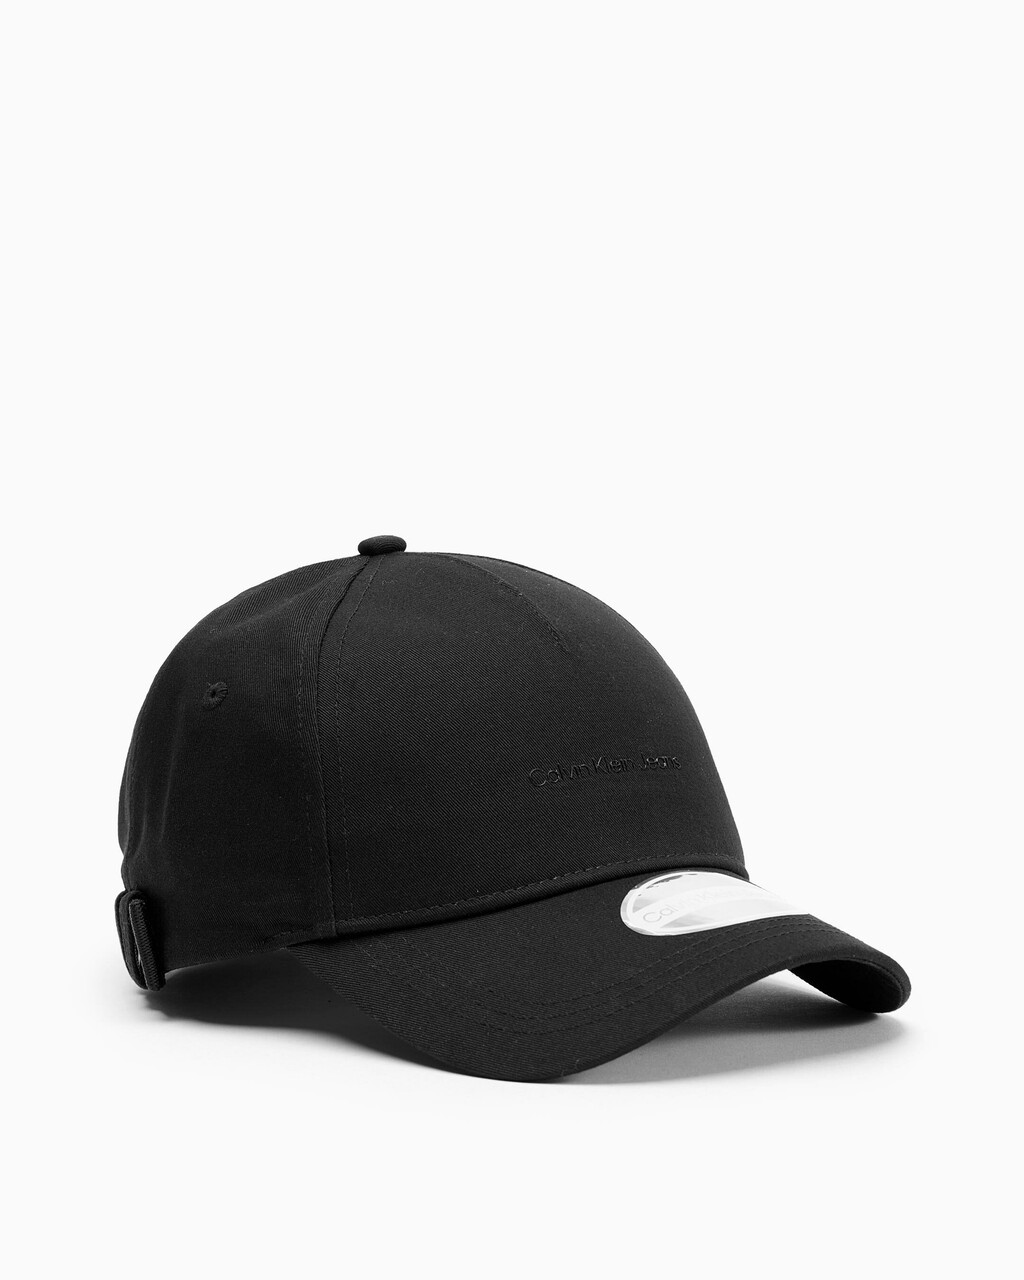 ULTRALIGHT ORGANIC COTTON CAP, Black, hi-res